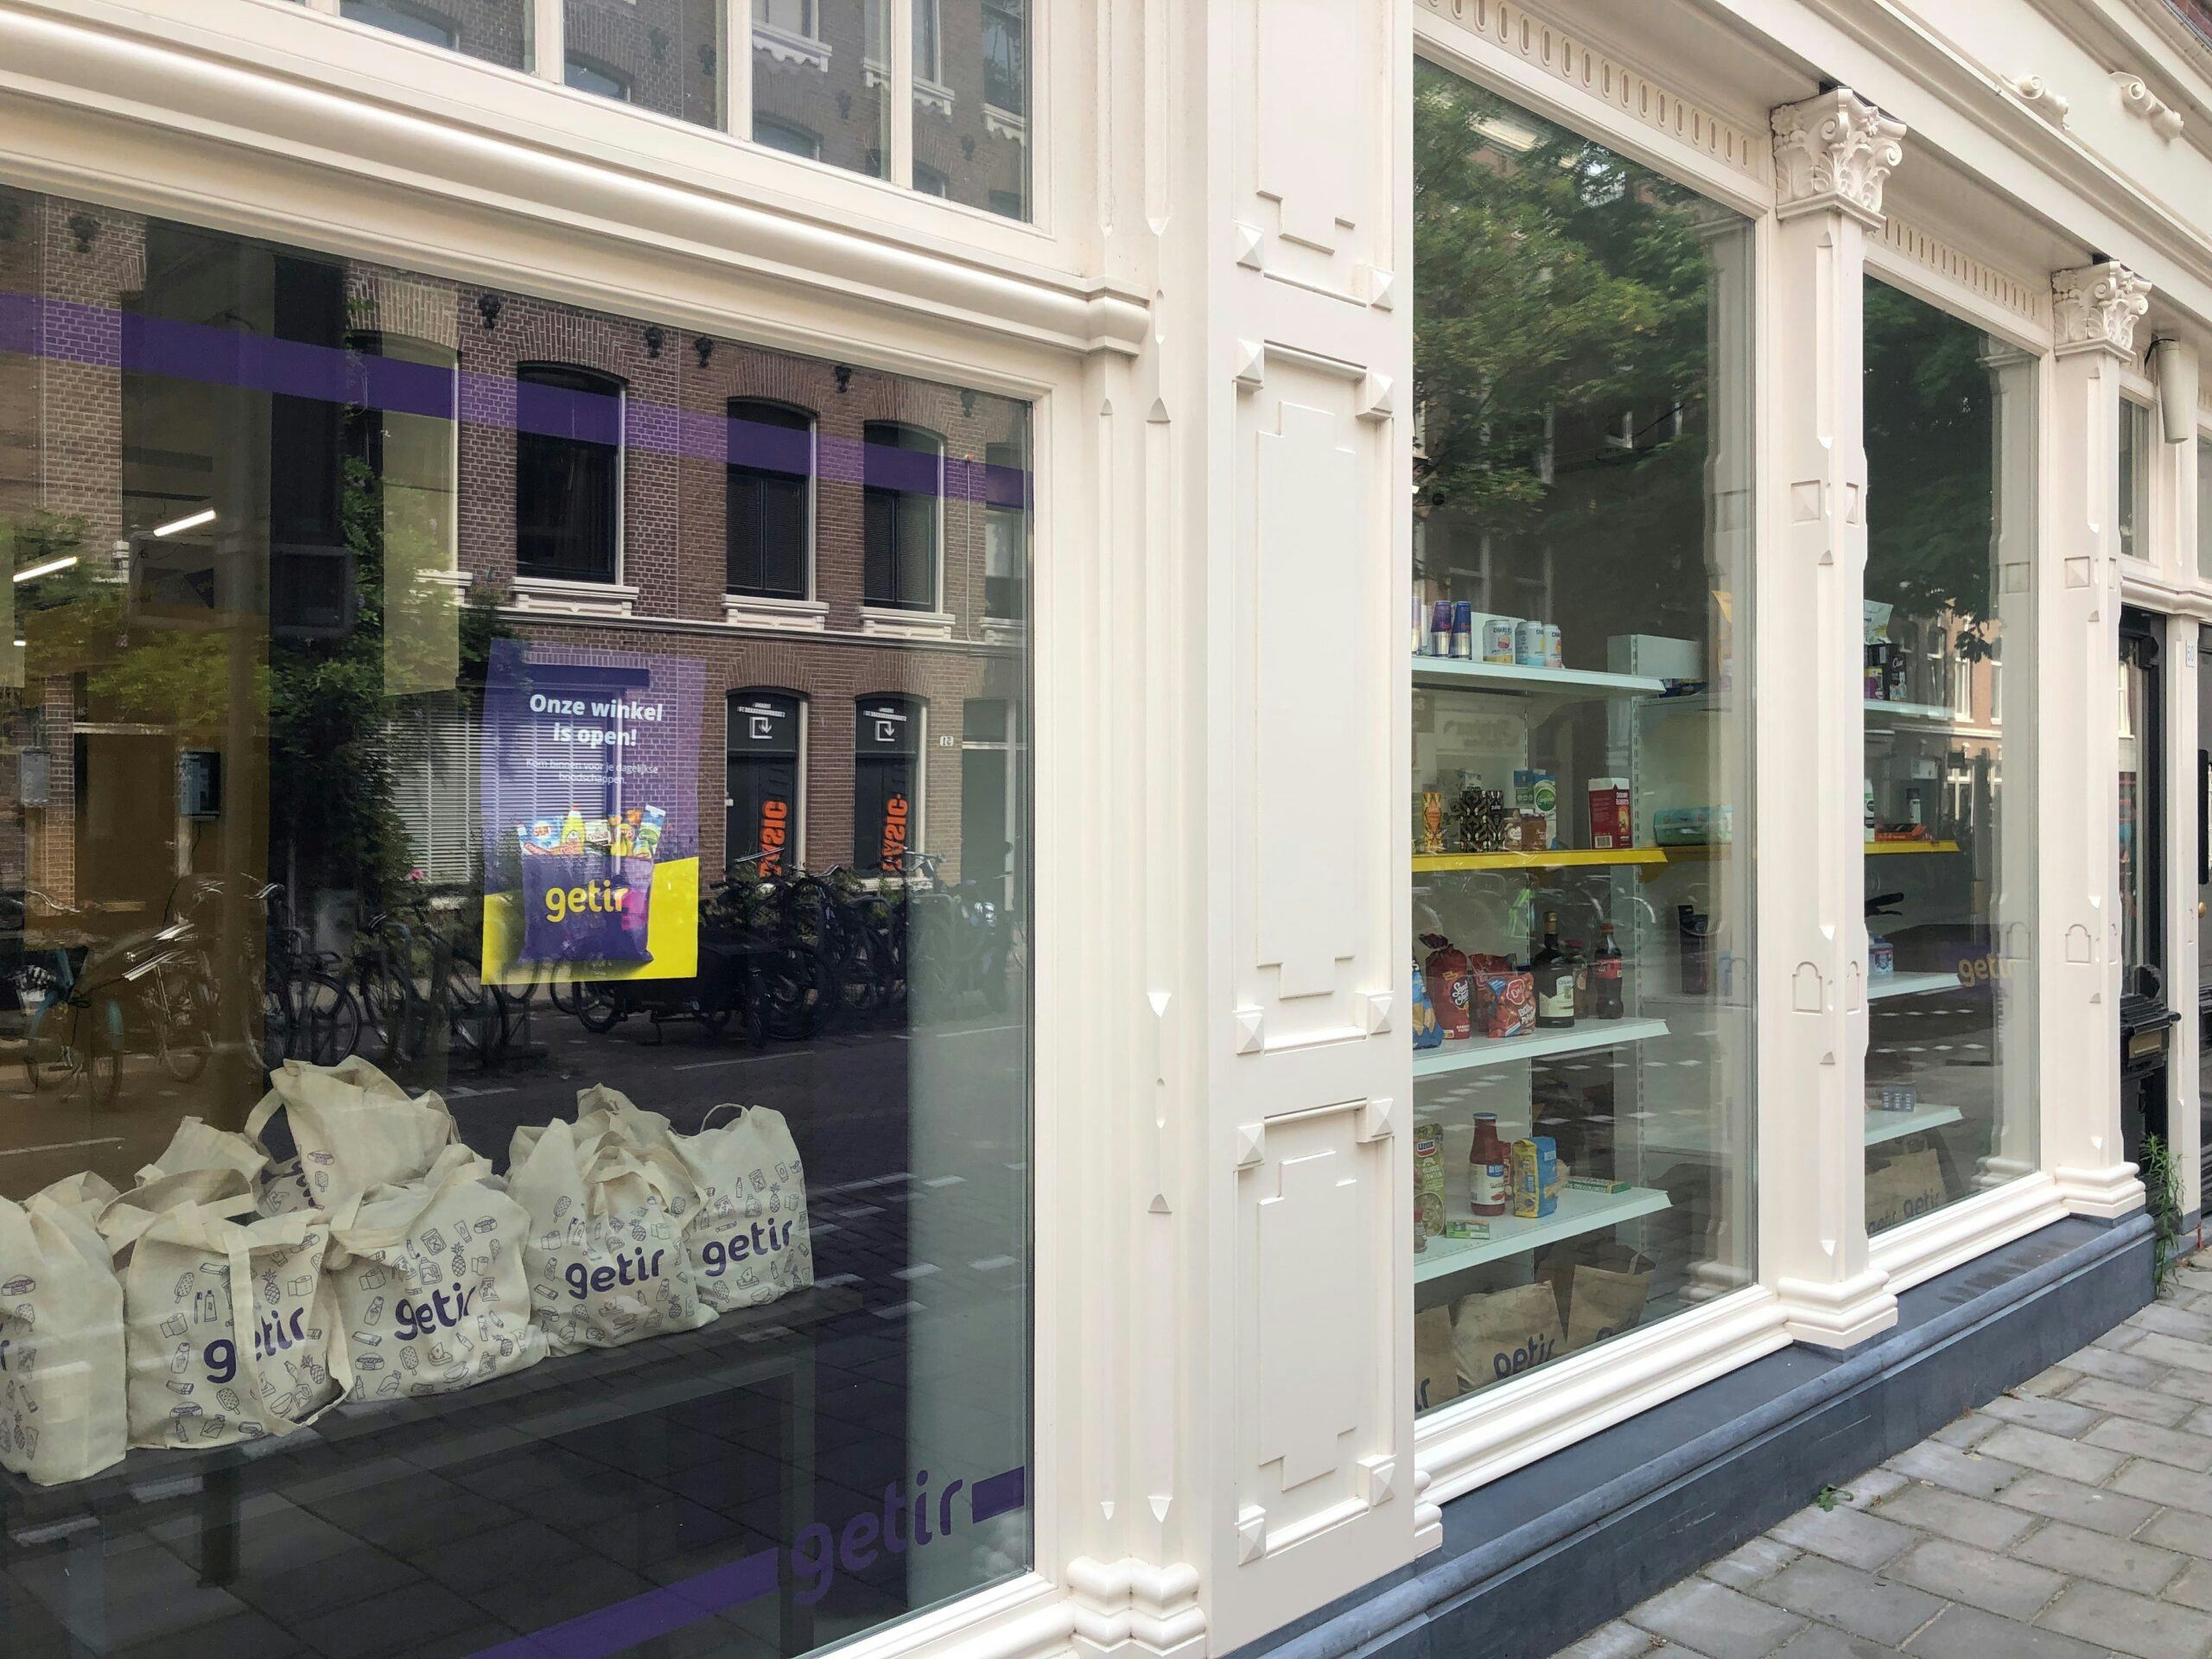 De etalage van de winkel in Amsterdam. Foto: Distrifood